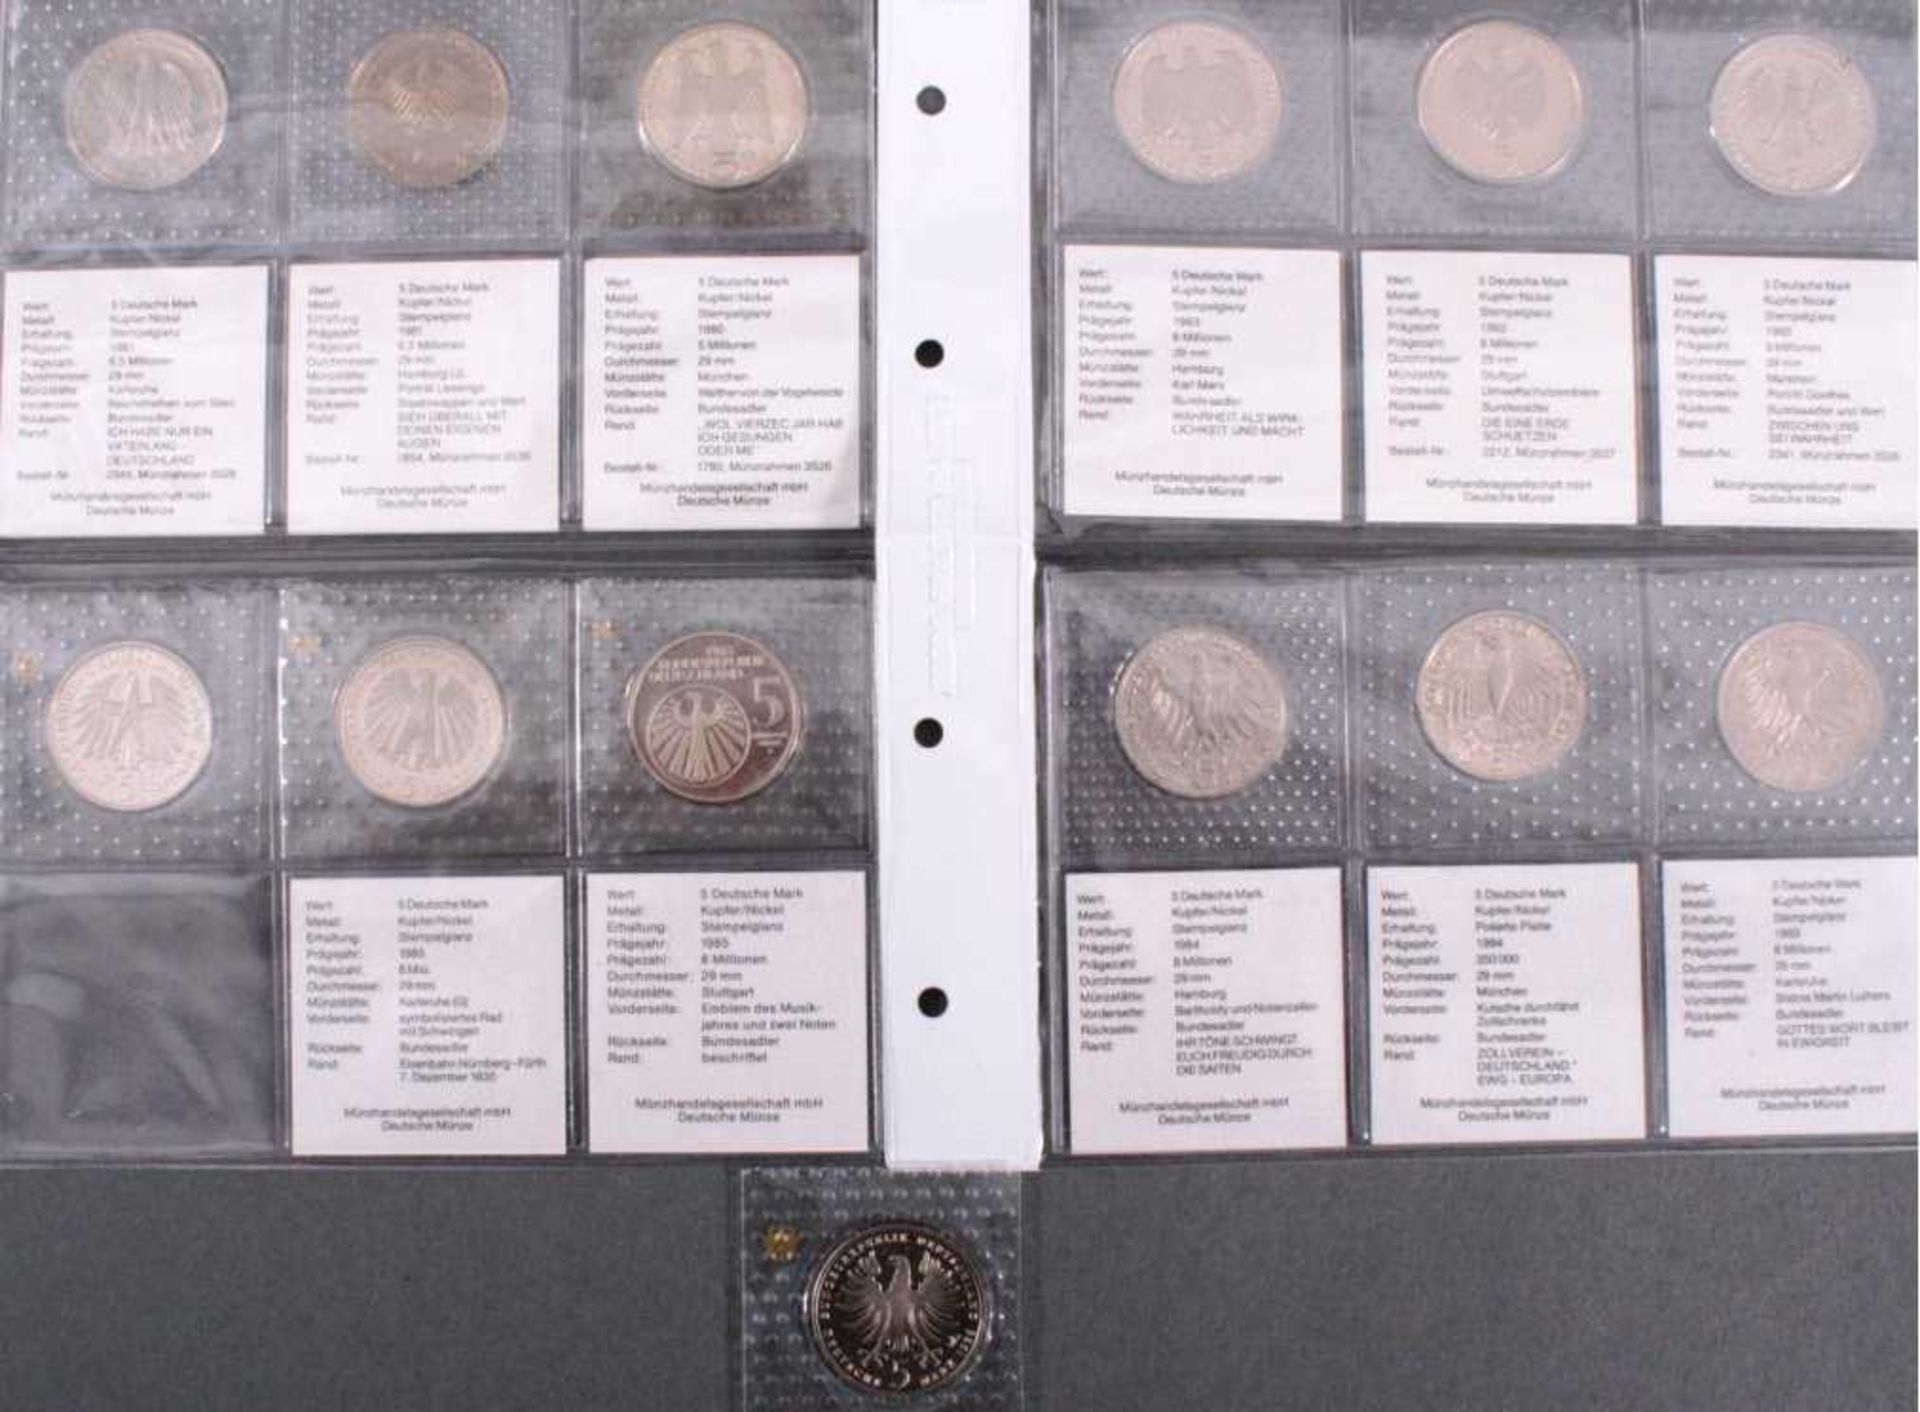 13 x 5 DM Gedenkmünzen pp orginal verschweißtVogelweide, Lessing, vom Stein, Goethe, Umweltschutz,